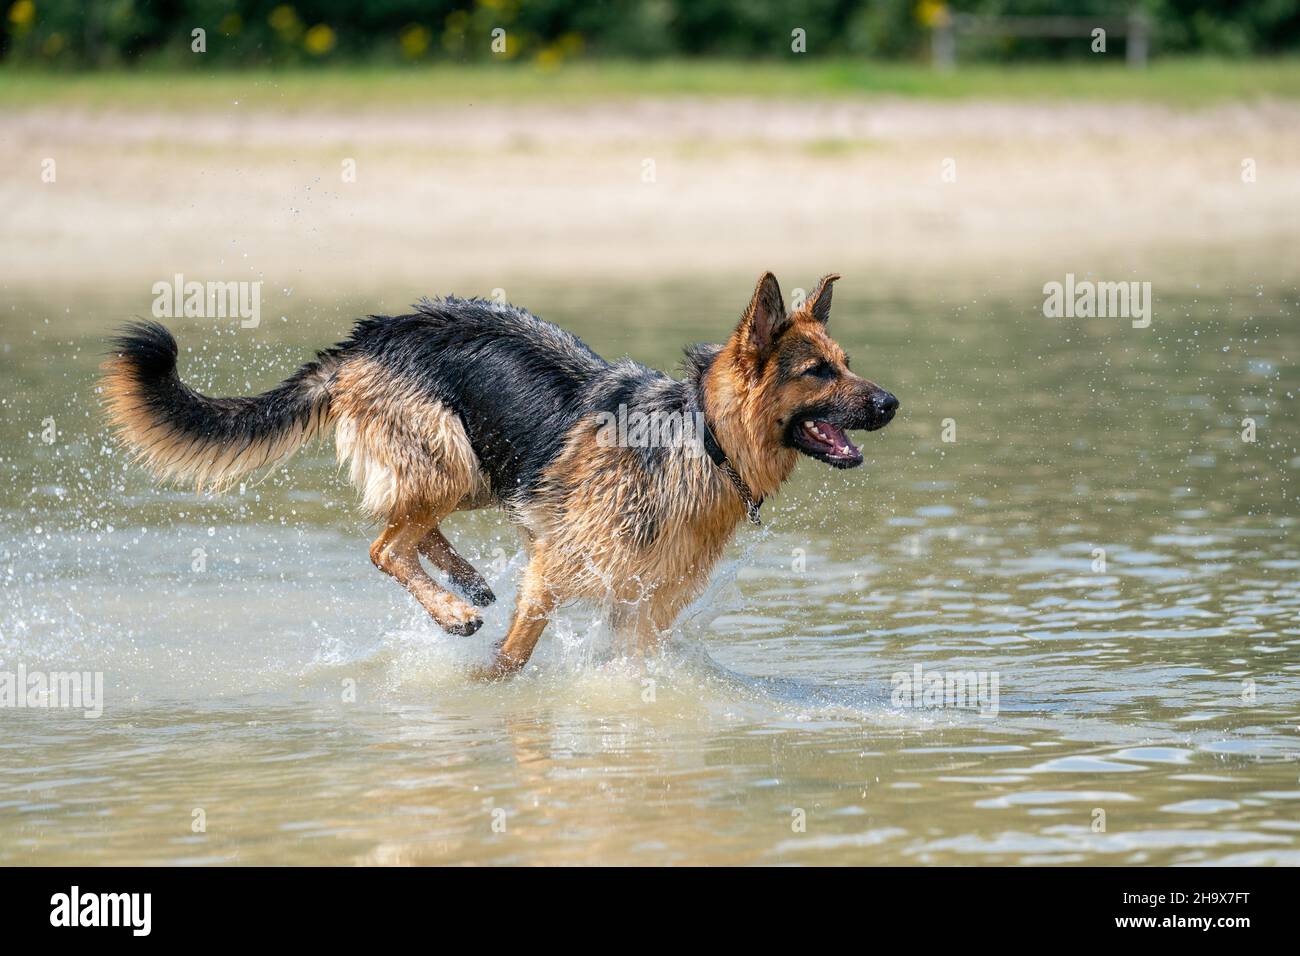 Giovane e felice Pastore tedesco, giocando in acqua. Il cane schizza, corre e salta felicemente nel lago. Foto Stock